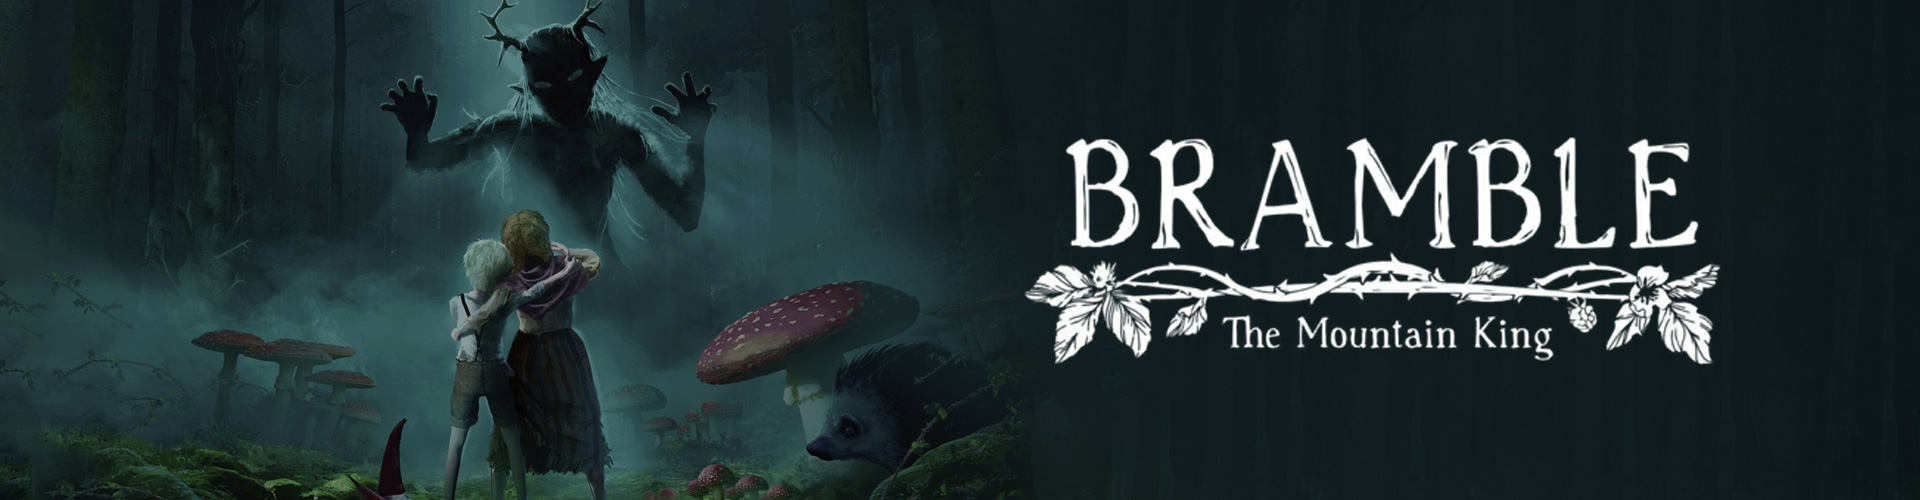 Bramble The Mountain King: Ein Horrorspiel und Dark Fantasy-Spiel mit einer reichen ErzÃ¤hlung